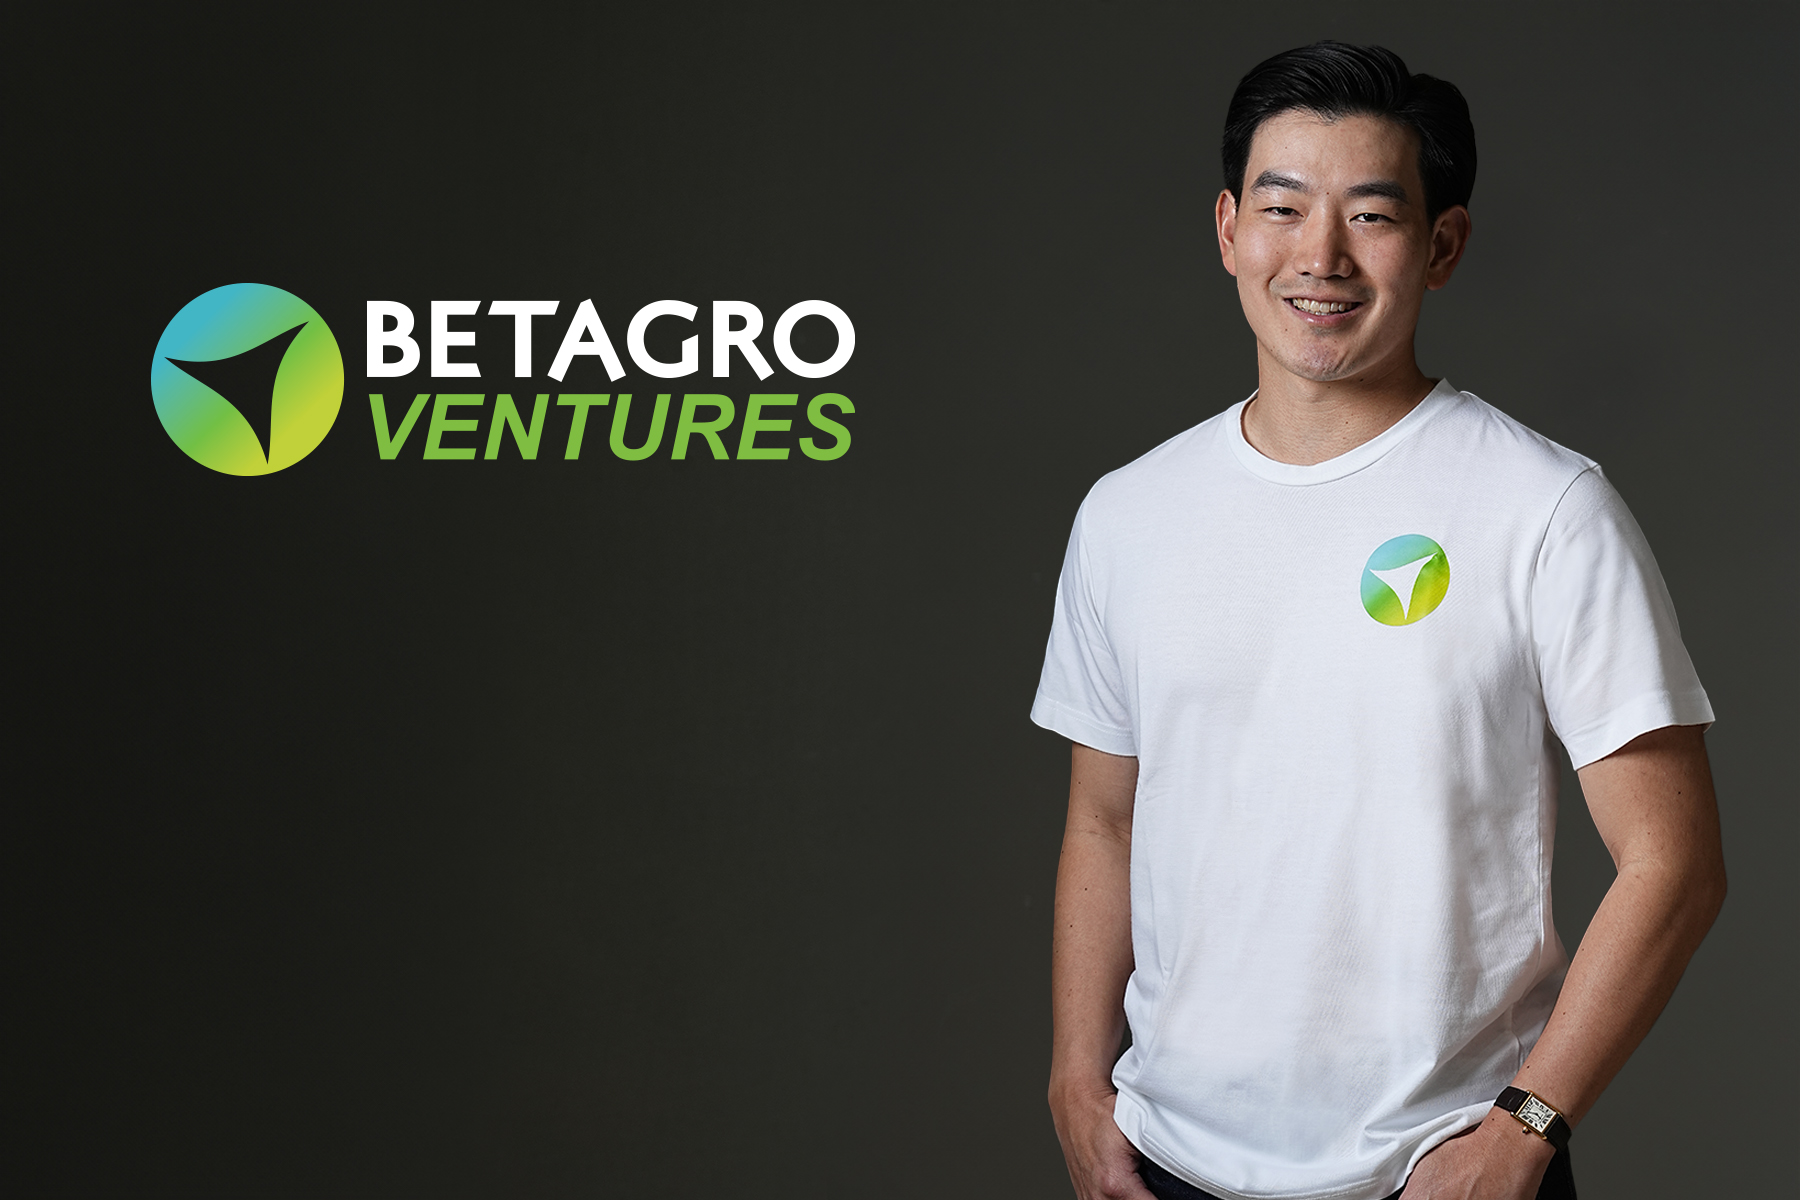 “BTG” เปิดตัว “Betagro Ventures” มุ่งบ่มเพาะและพัฒนาธุรกิจ “FoodTech & AgriTech” พร้อมเดินหน้าลงทุนสตาร์ทอัพ ผ่านกองทุน 30 ล้านเหรียญสหรัฐ สร้างโอกาสเติบโตที่ยั่งยืน